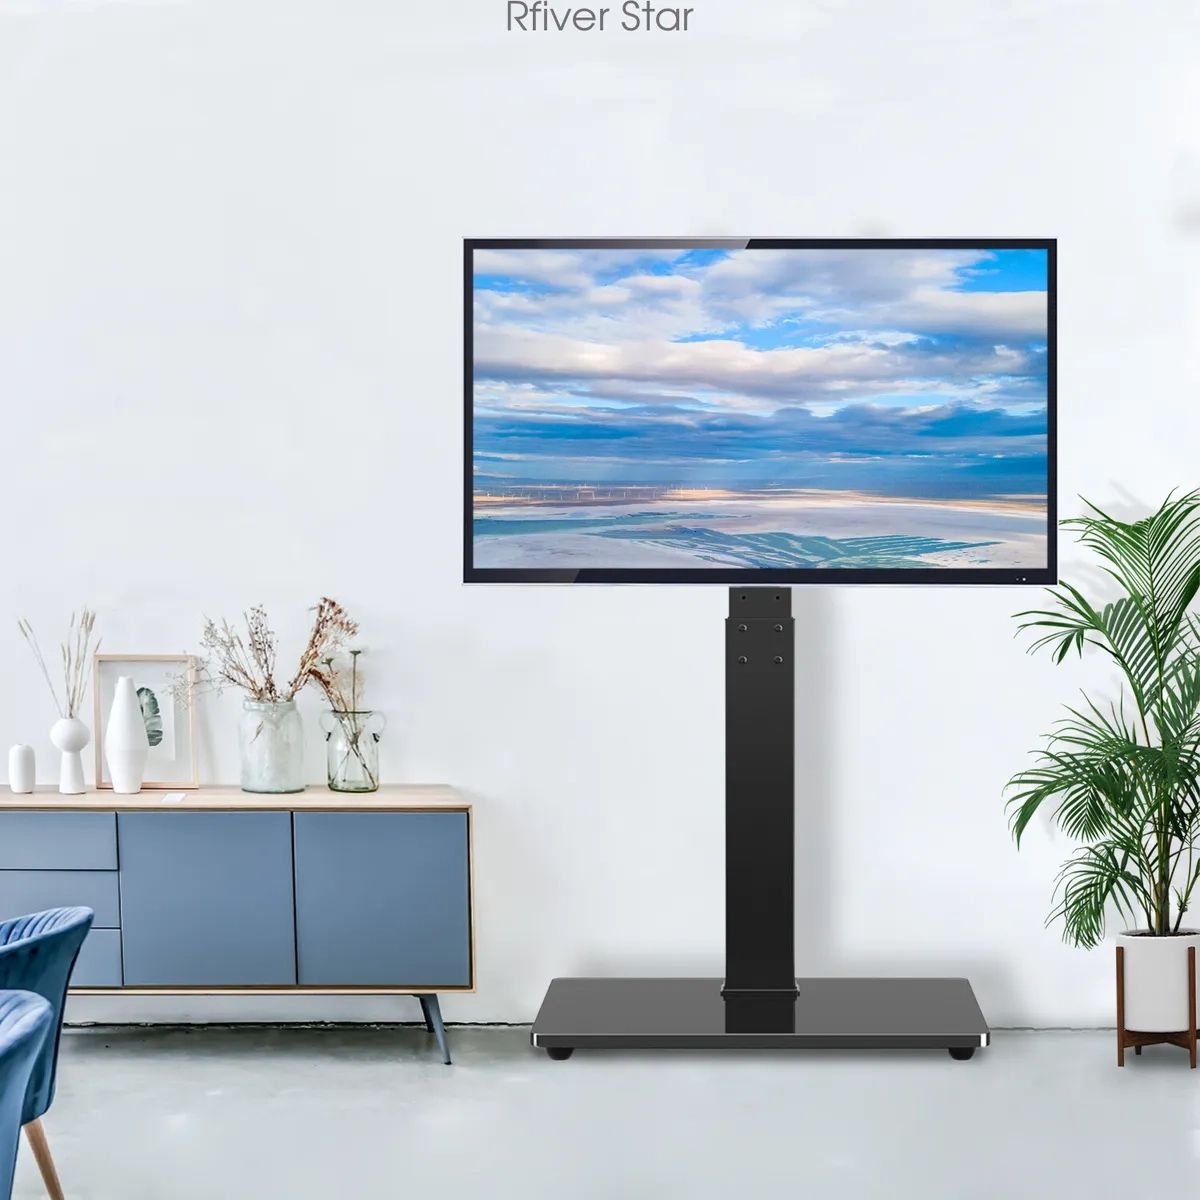 Universal Floor Tv Stand With Swivel Mount&shelves For 32 65 Inch Tvs | Ebay Regarding Universal Floor Tv Stands (Photo 6 of 15)